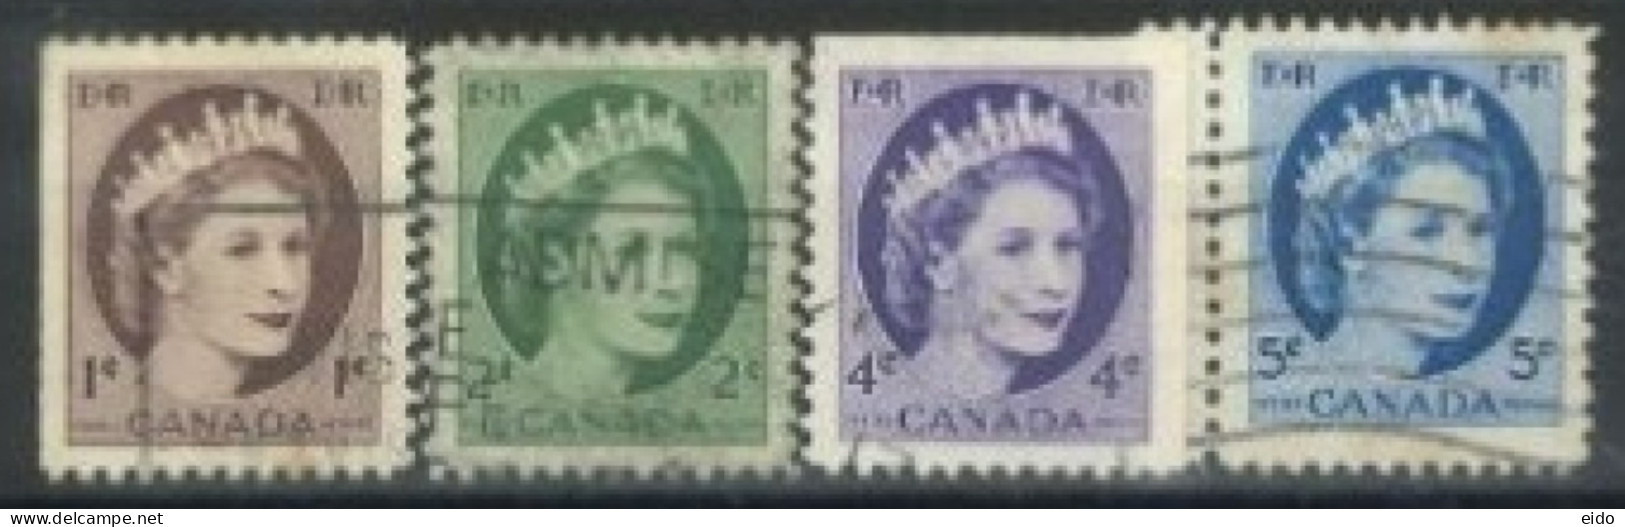 CANADA - 1954, QUEEN ELIZABETH II STAMPS SET OF 4, USED. - Gebraucht